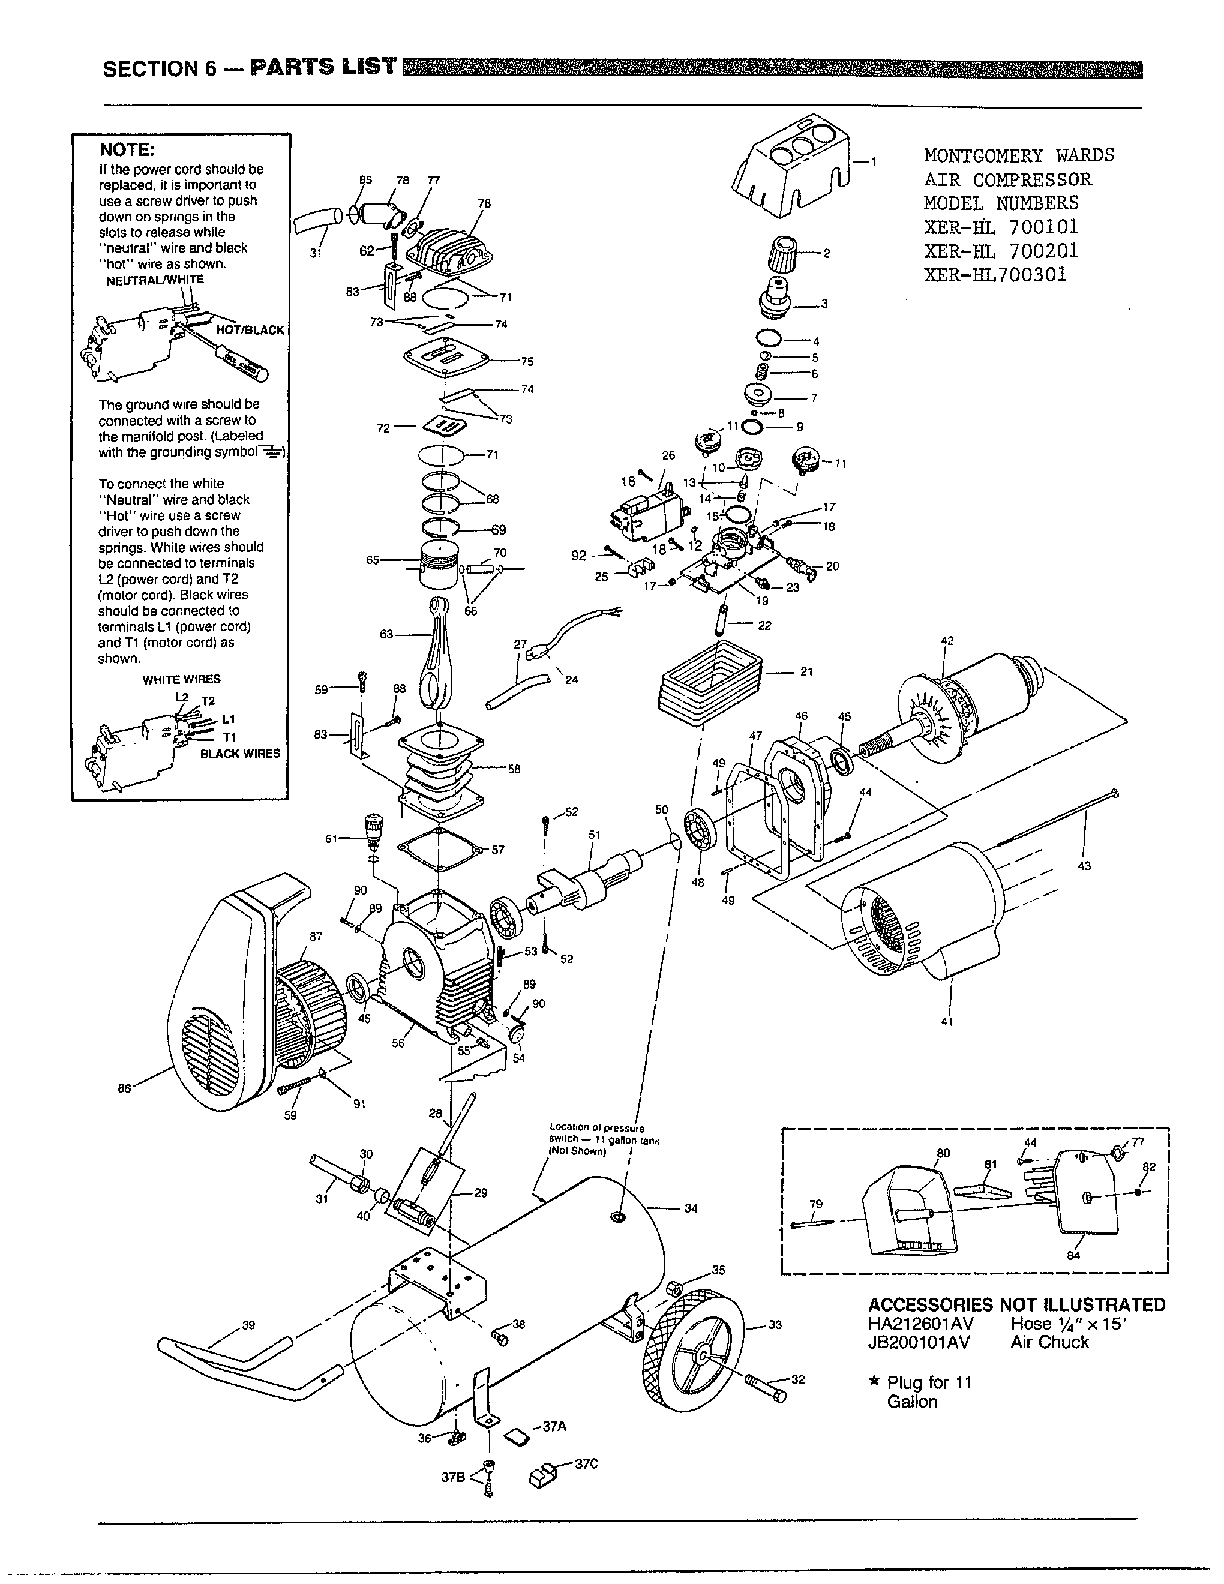 Campbell Hausfeld Air Compressor Parts Diagram Looking For Campbell Hausfeld Model Hl700301 Air Compressor Repair